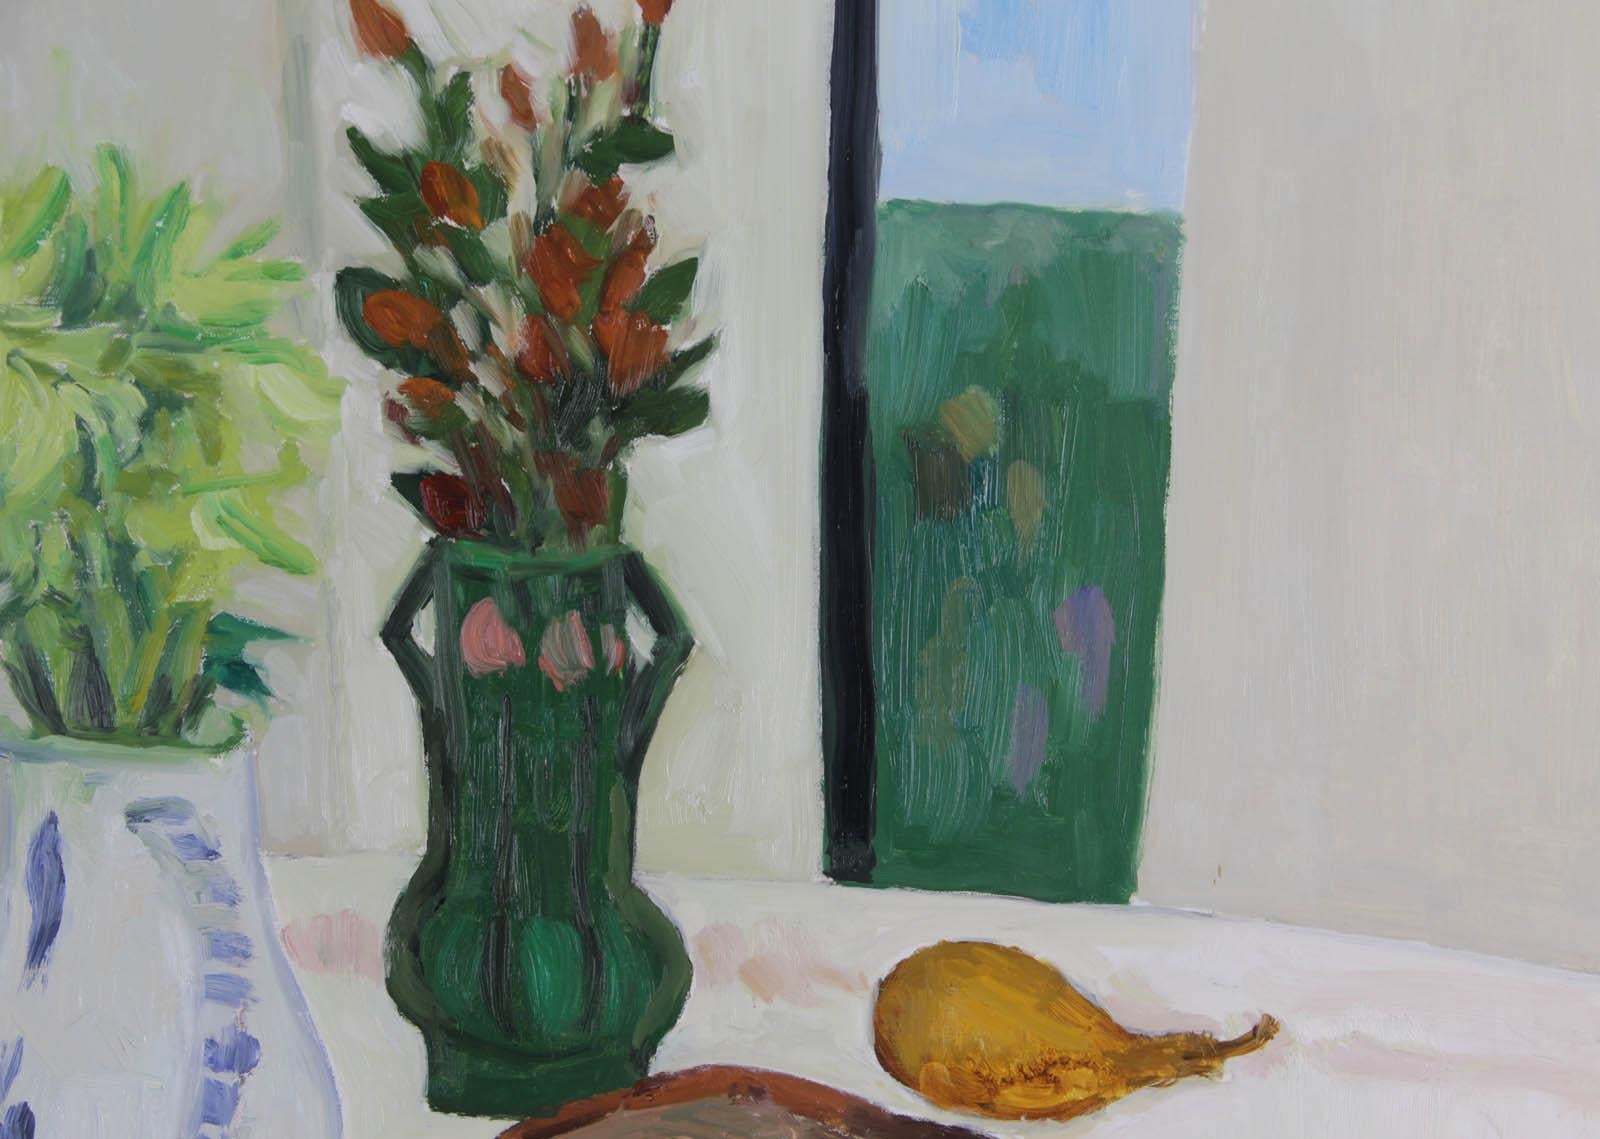 Arthur VAN HECKE (1924-2003)

Fruits, maïs et raisins
Huile sur toile
Taille : 81 x 100cm
Signé en bas à droite
Peinture en parfait état, vendue non encadrée.

Origine :
- Studio d'artiste
- Marin Price Gallery, Washington, États-Unis
- Findlay